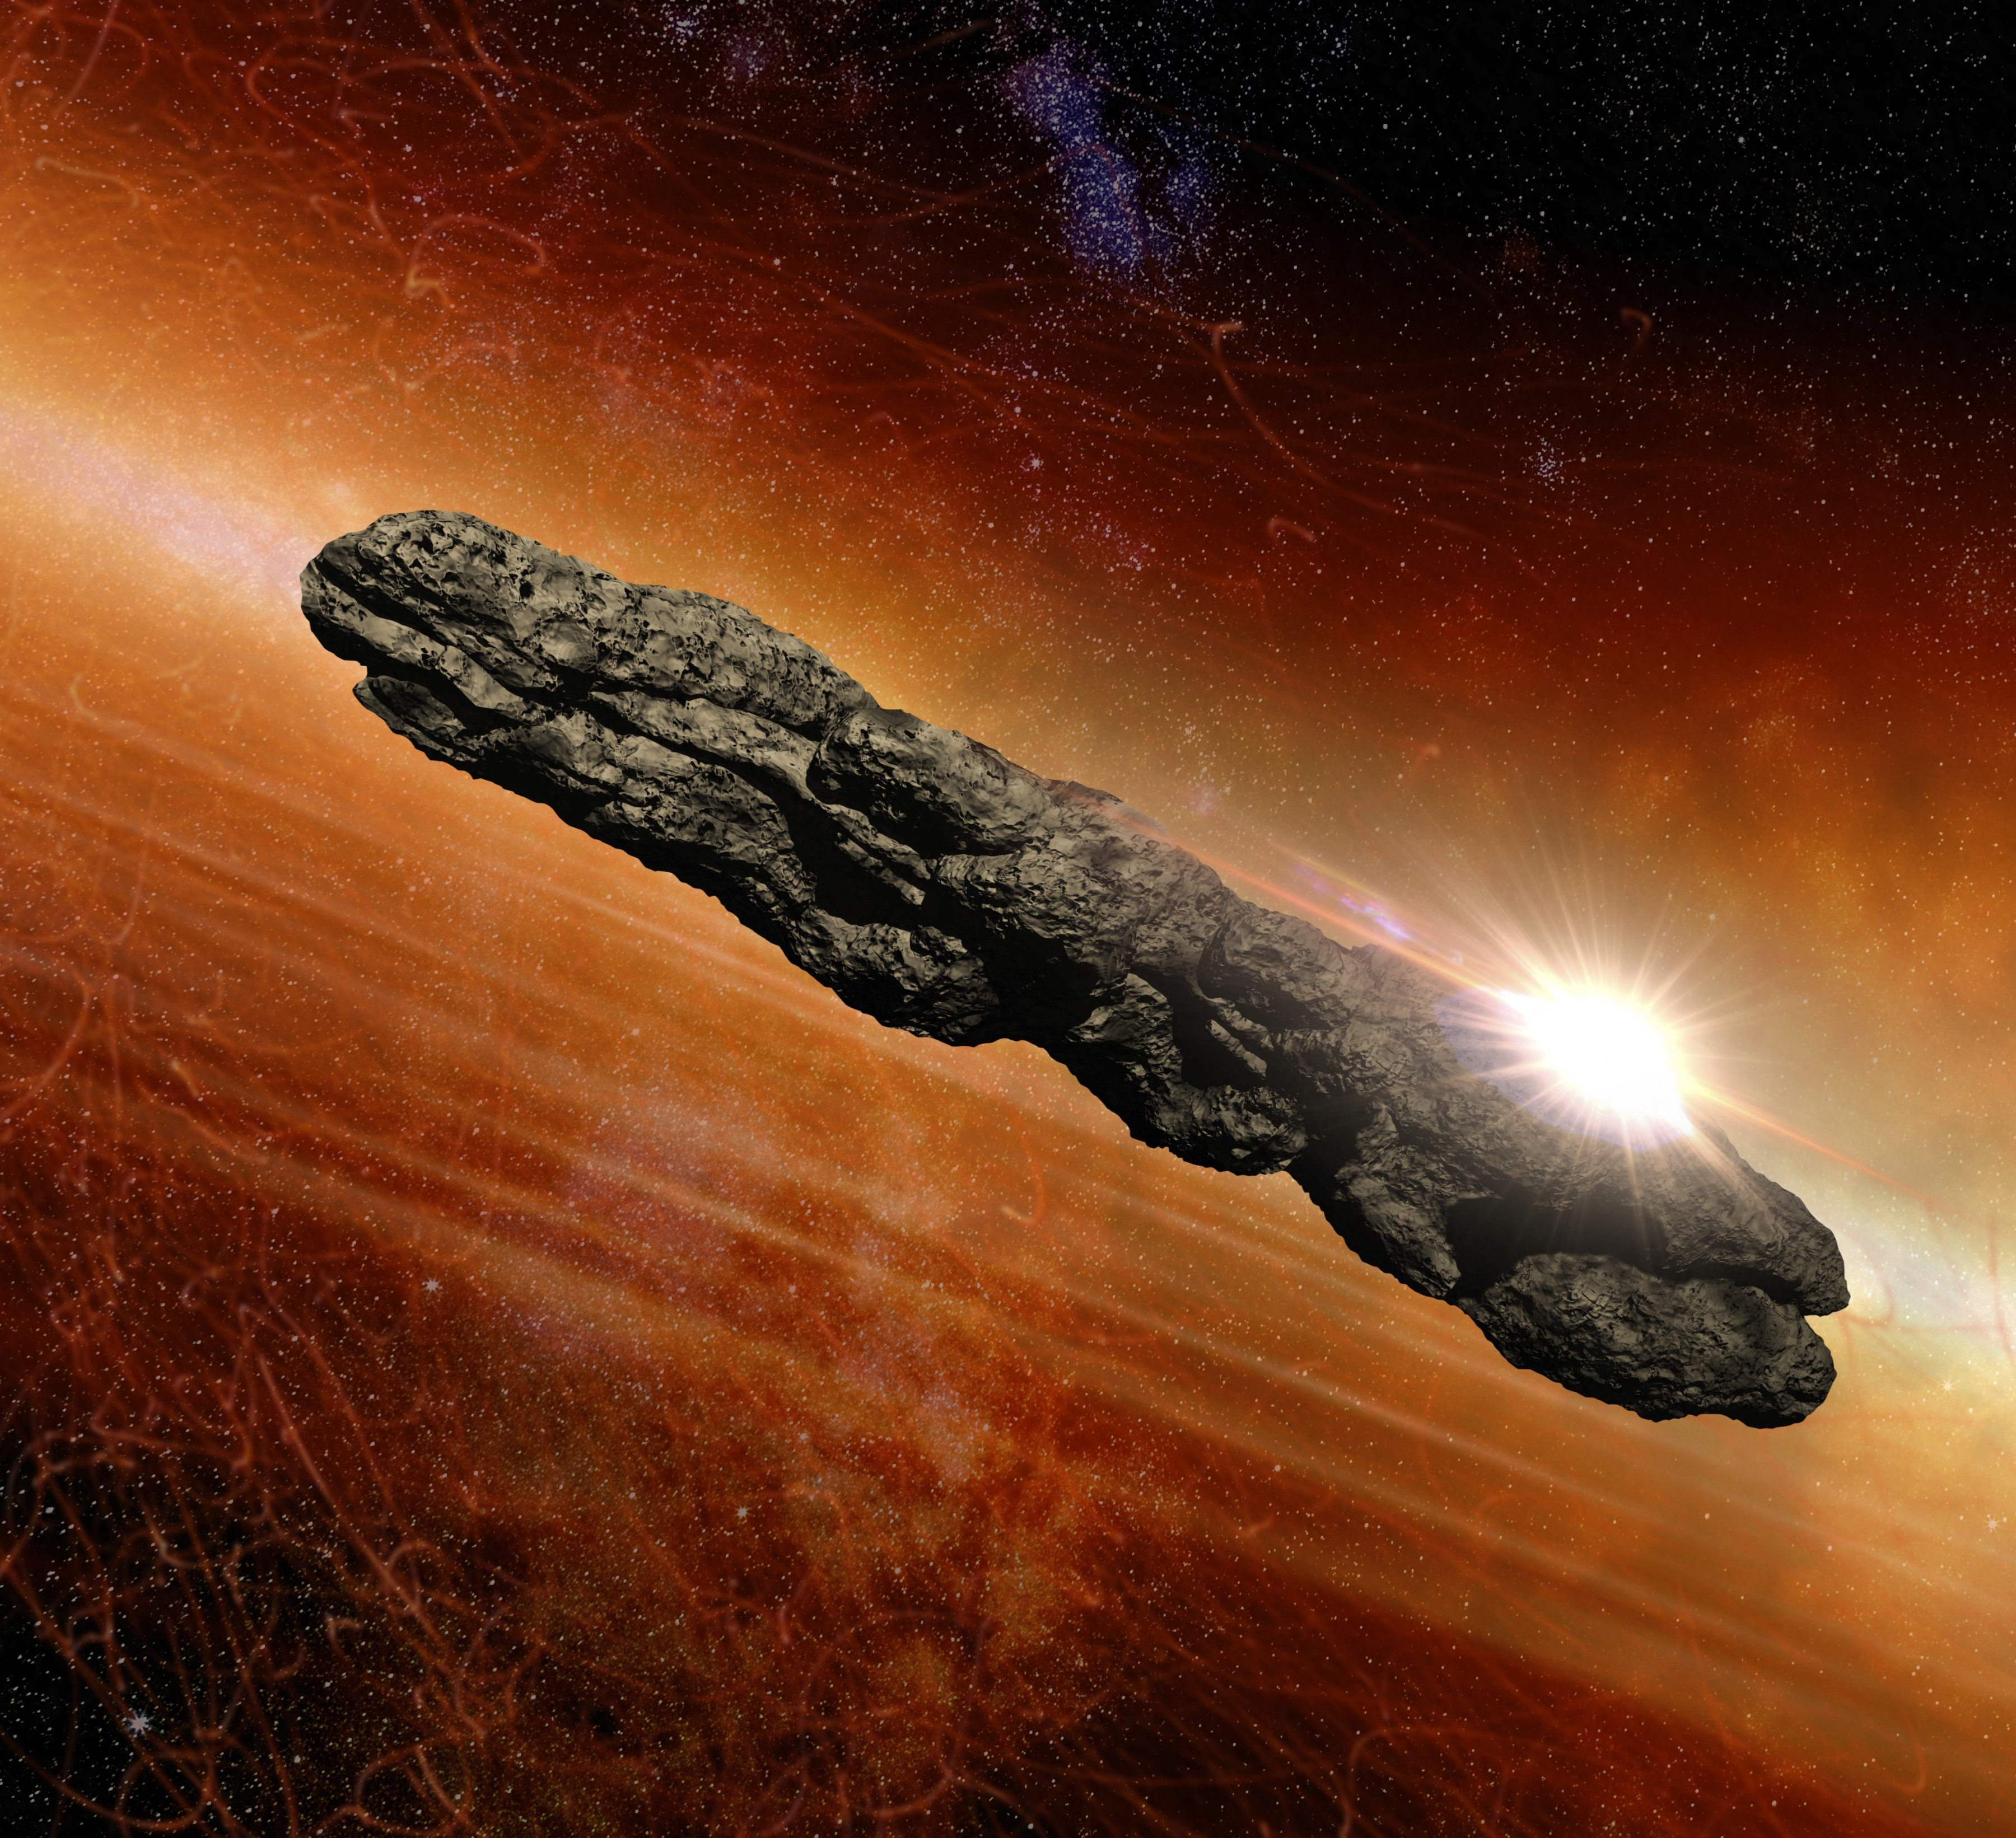 Avi Loeb harvardi asztrofizikus azután sem engedte el az ufóteóriát, hogy kollégái magyarázták az 'Oumuamua-rejtélyt